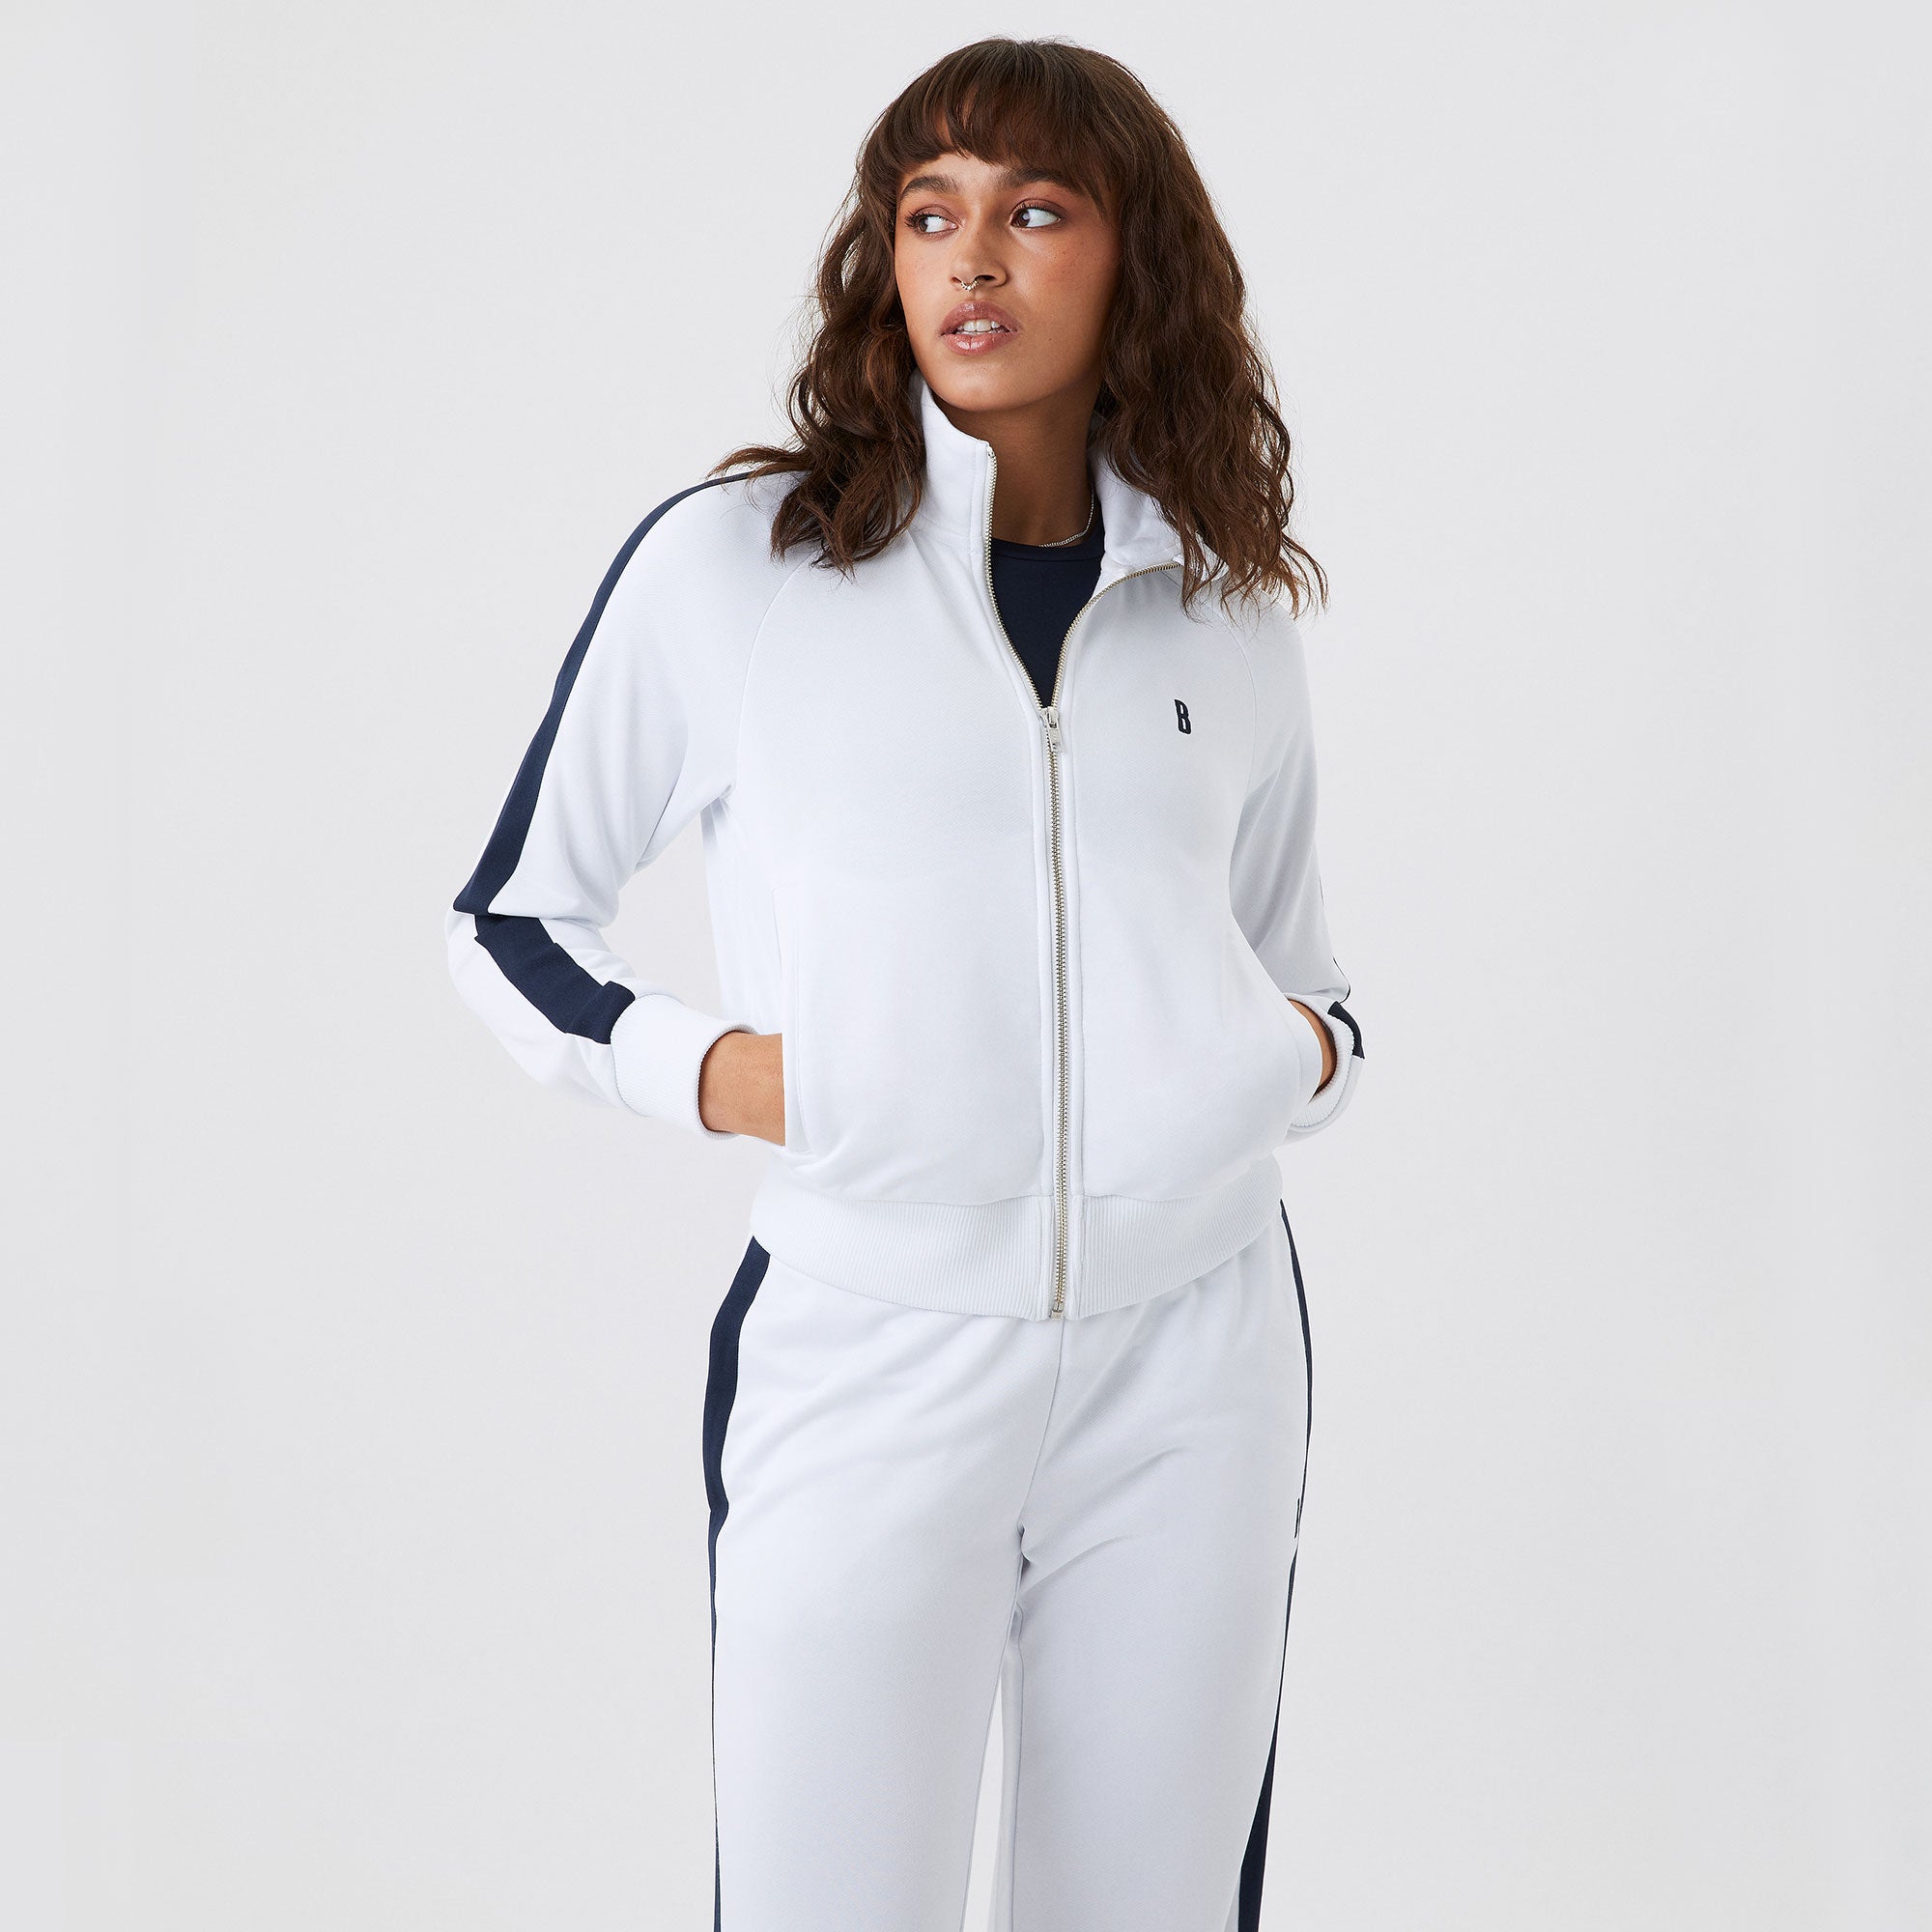 Ace Jacket - White Tennis Jacket, Athletic Jacket Womens